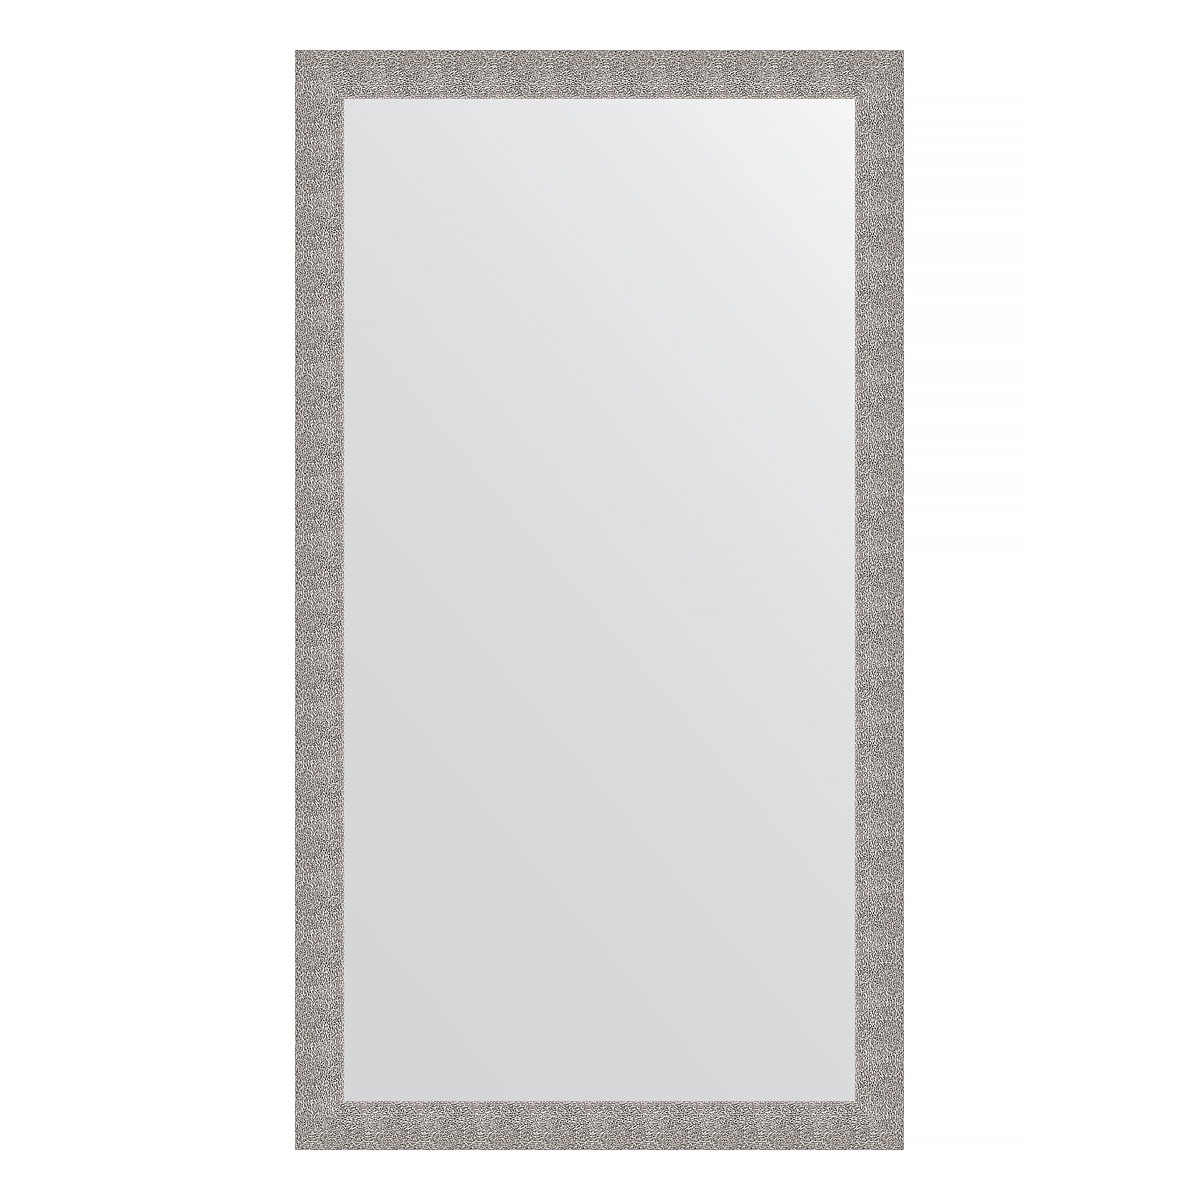 Зеркало напольное в багетной раме Evoform чеканка серебряная 90 мм 111x201 см зеркало напольное в багетной раме чеканка серебряная 90 мм 81x201 см